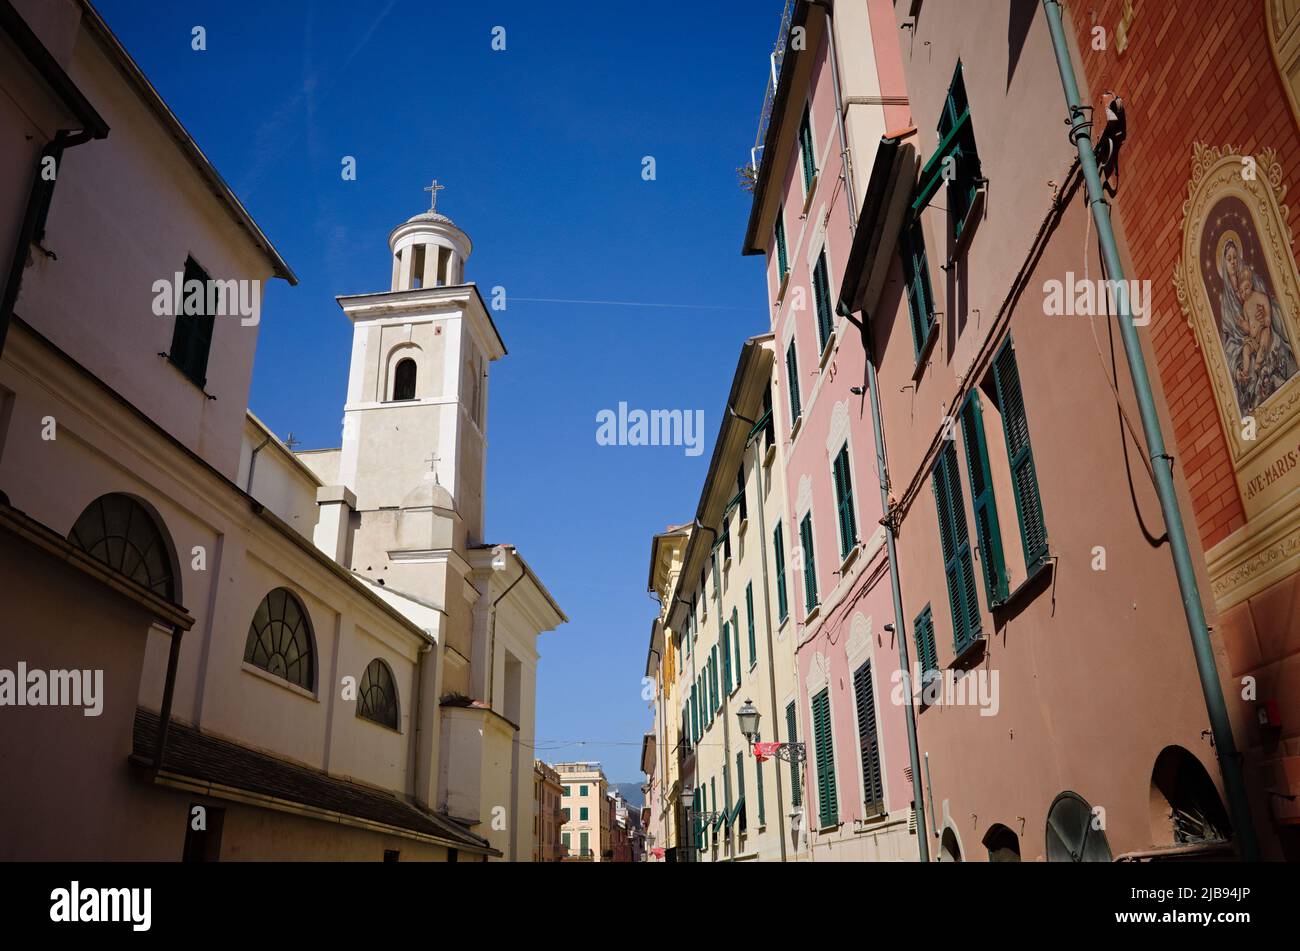 Vue sur le clocher de la basilique Santa Maria de Nazareth dans la ville de Sestri Levante. Rue étroite avec des bâtiments typiquement italiens avec des volets en bois Banque D'Images